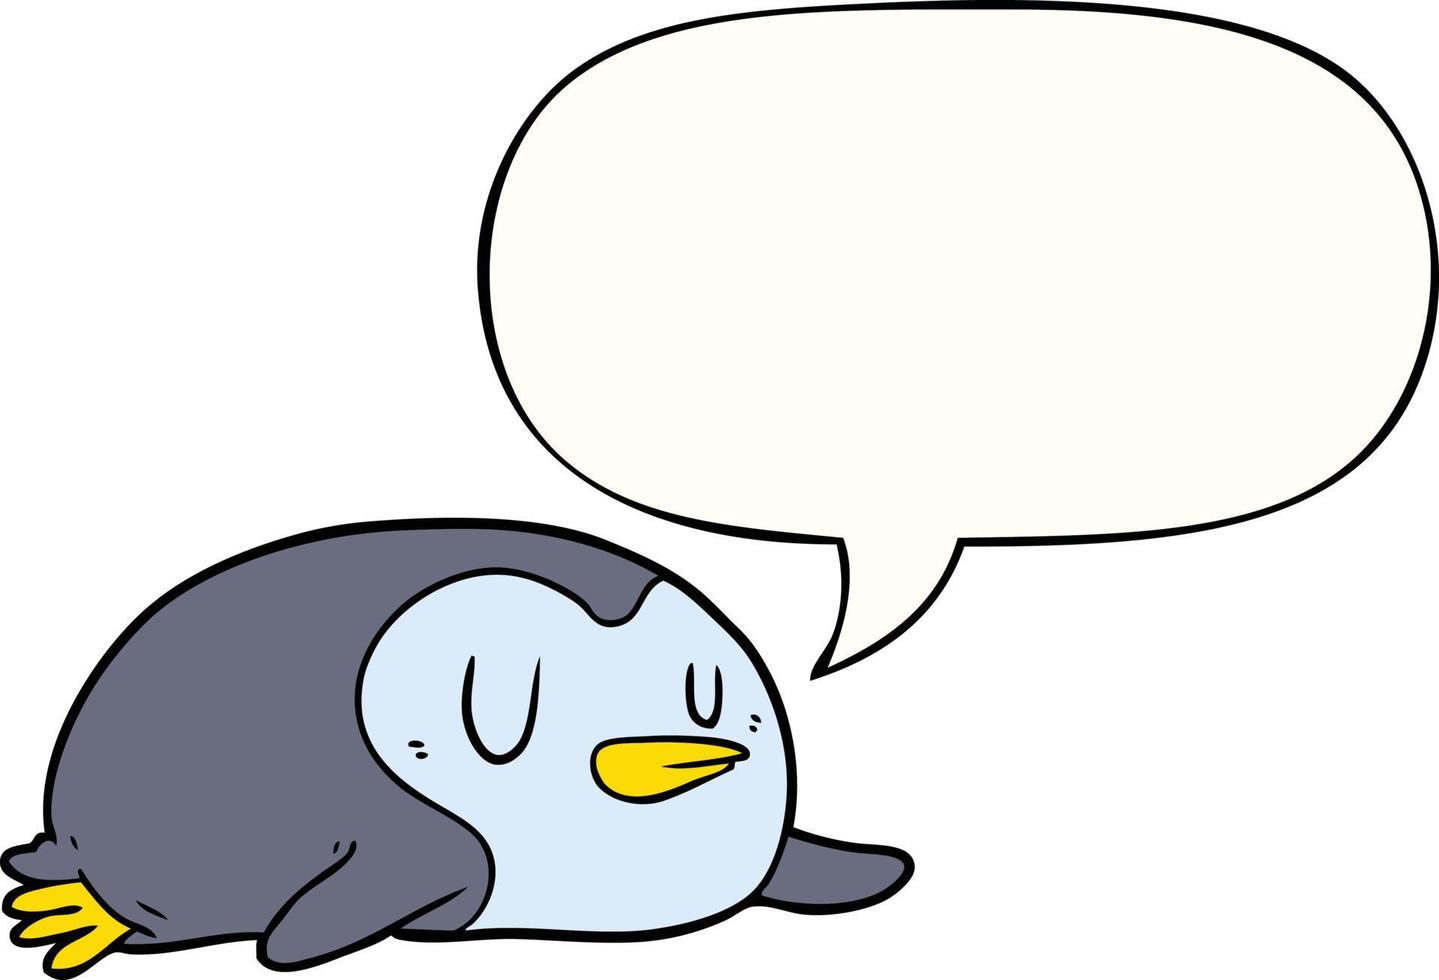 cartoon penguin and speech bubble vector